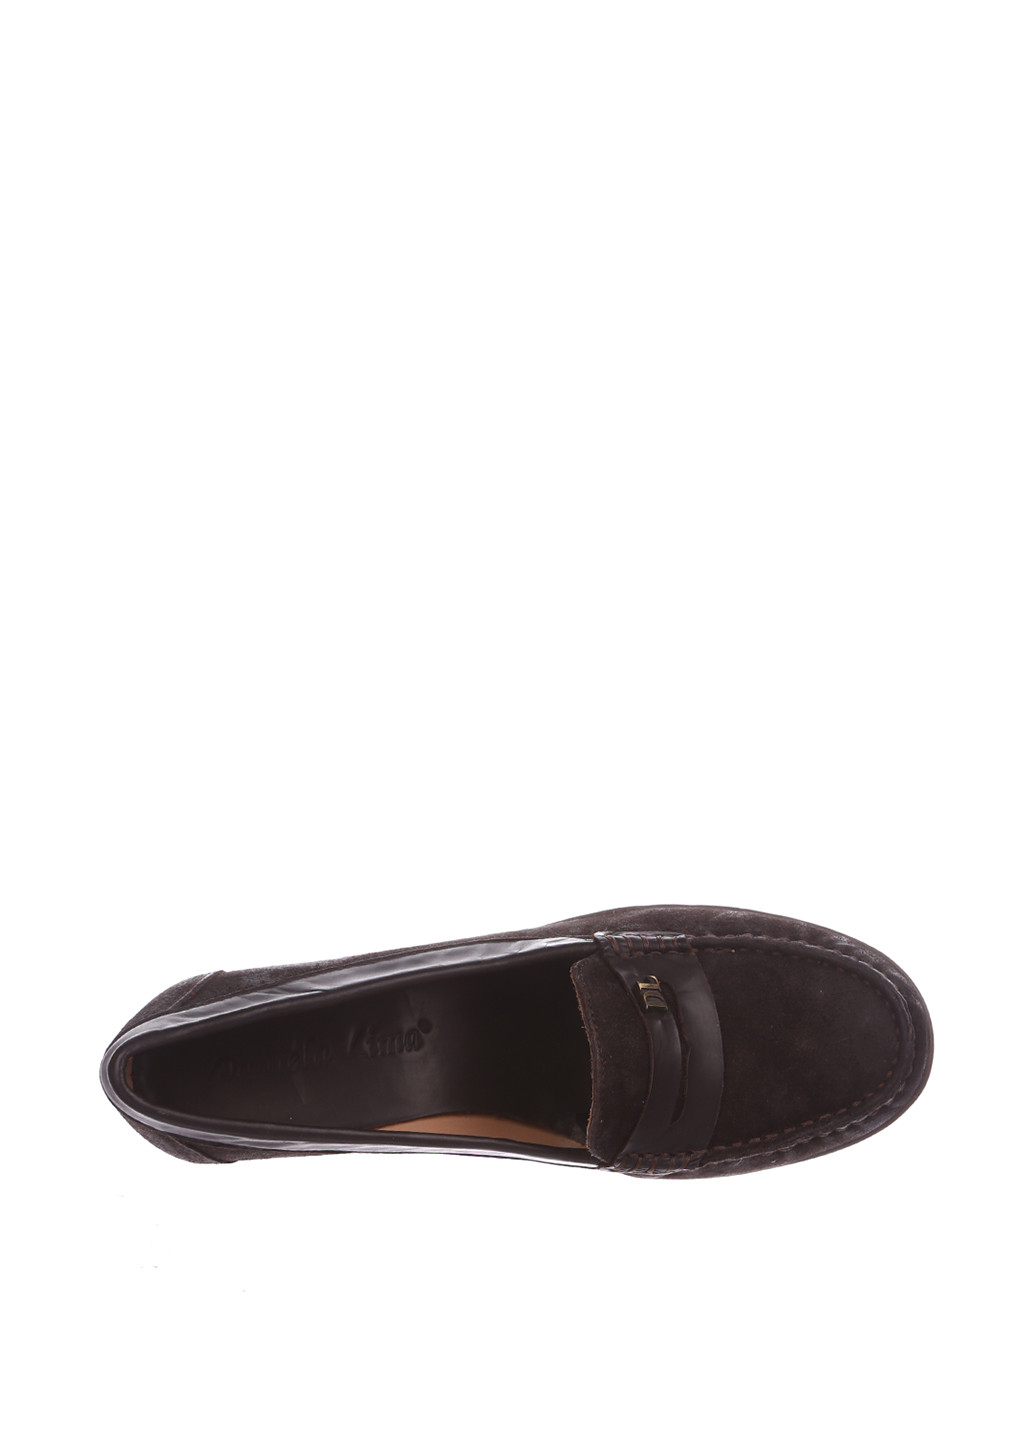 Туфлі Daniela Lima однотонні темно-коричневі кежуали